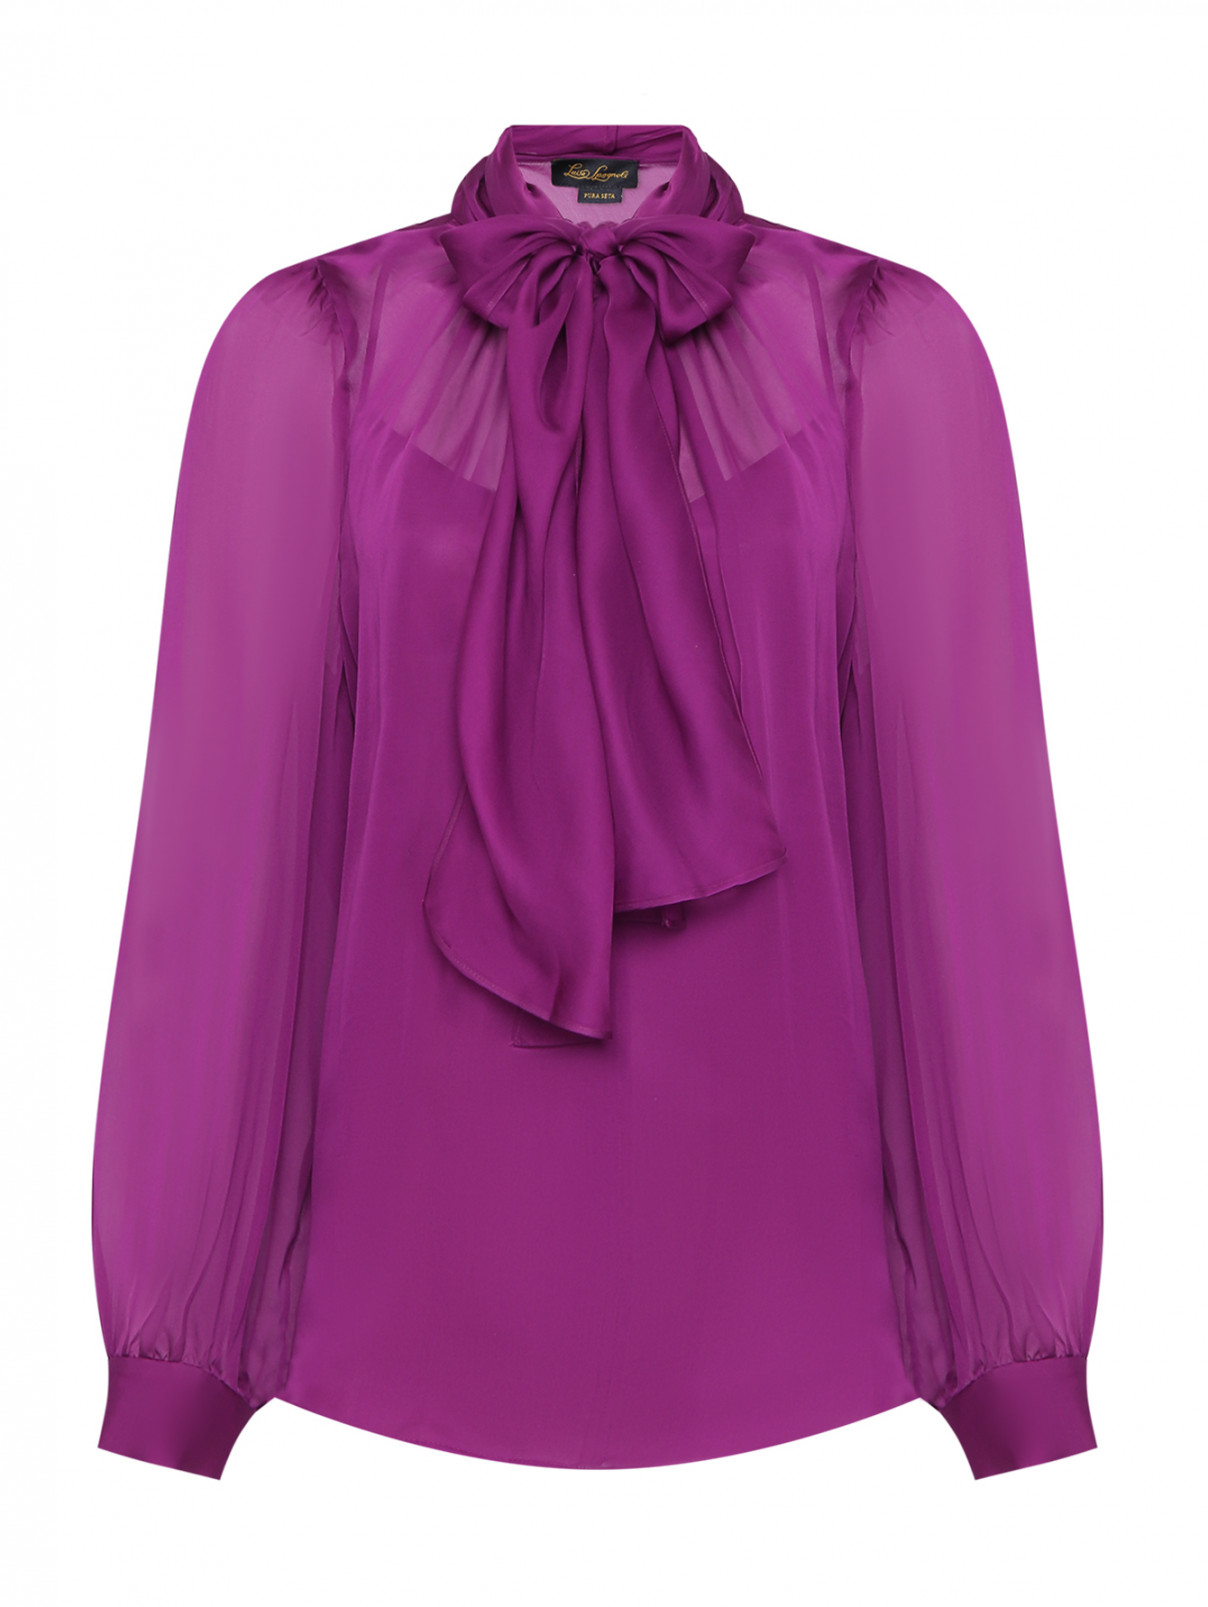 Полупрозрачная блуза с бантом Luisa Spagnoli  –  Общий вид  – Цвет:  Фиолетовый